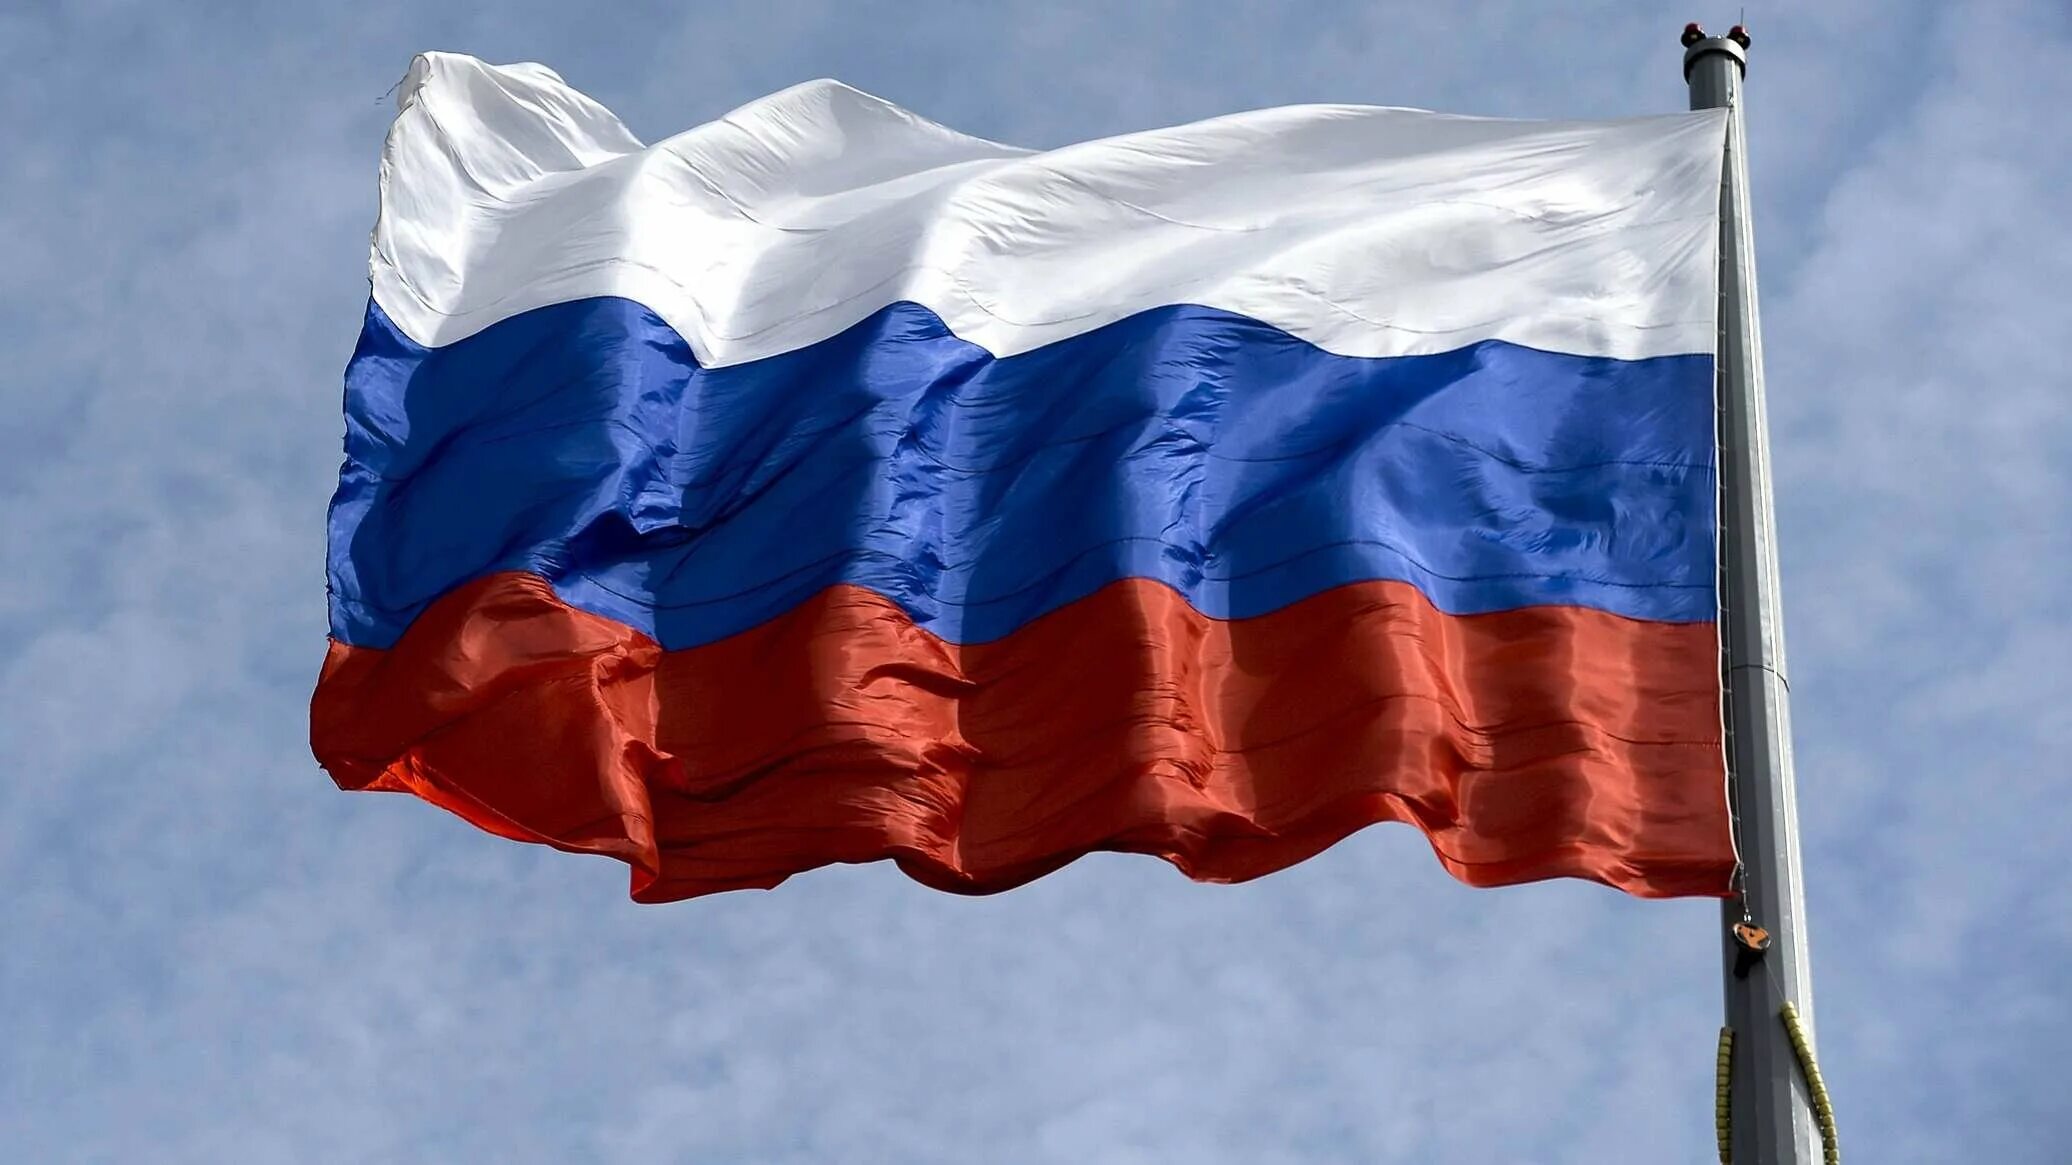 Как выглядит флаг картинка. Флаг Российской Федерации. Русский флаг. Ф̆̈л̆̈ӑ̈г̆̈ р̆̈о̆̈с̆̈с̆̈й̈й̈. Российский Триколор.